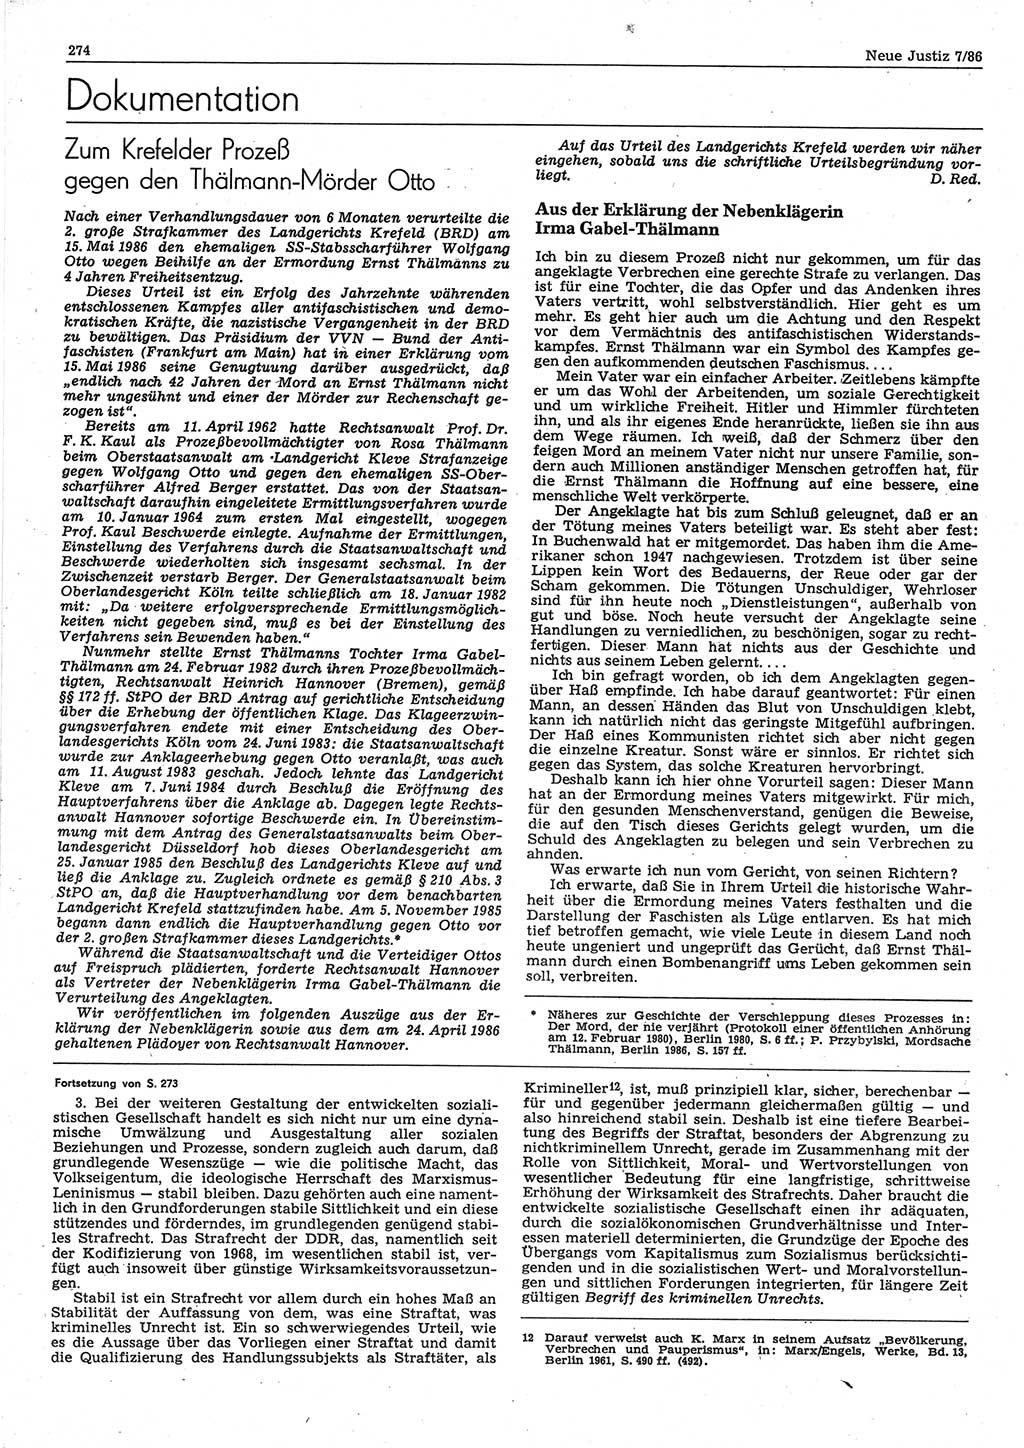 Neue Justiz (NJ), Zeitschrift für sozialistisches Recht und Gesetzlichkeit [Deutsche Demokratische Republik (DDR)], 40. Jahrgang 1986, Seite 274 (NJ DDR 1986, S. 274)